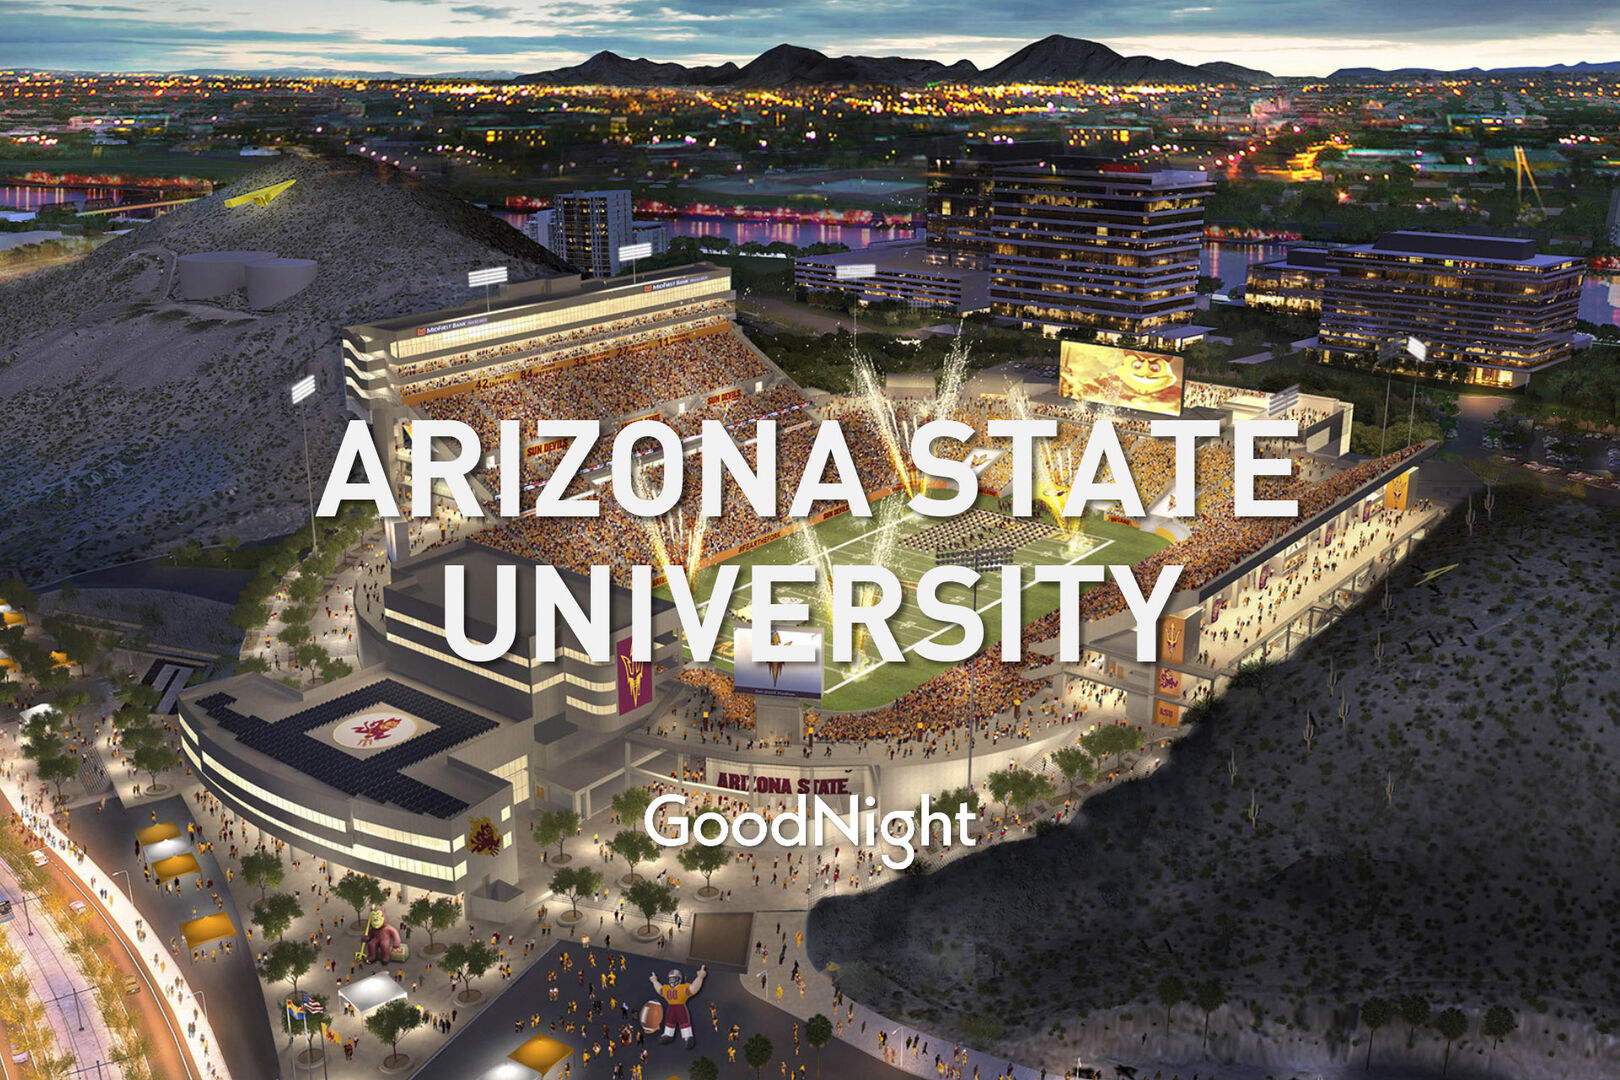 15 mins: Arizona State University (ASU)